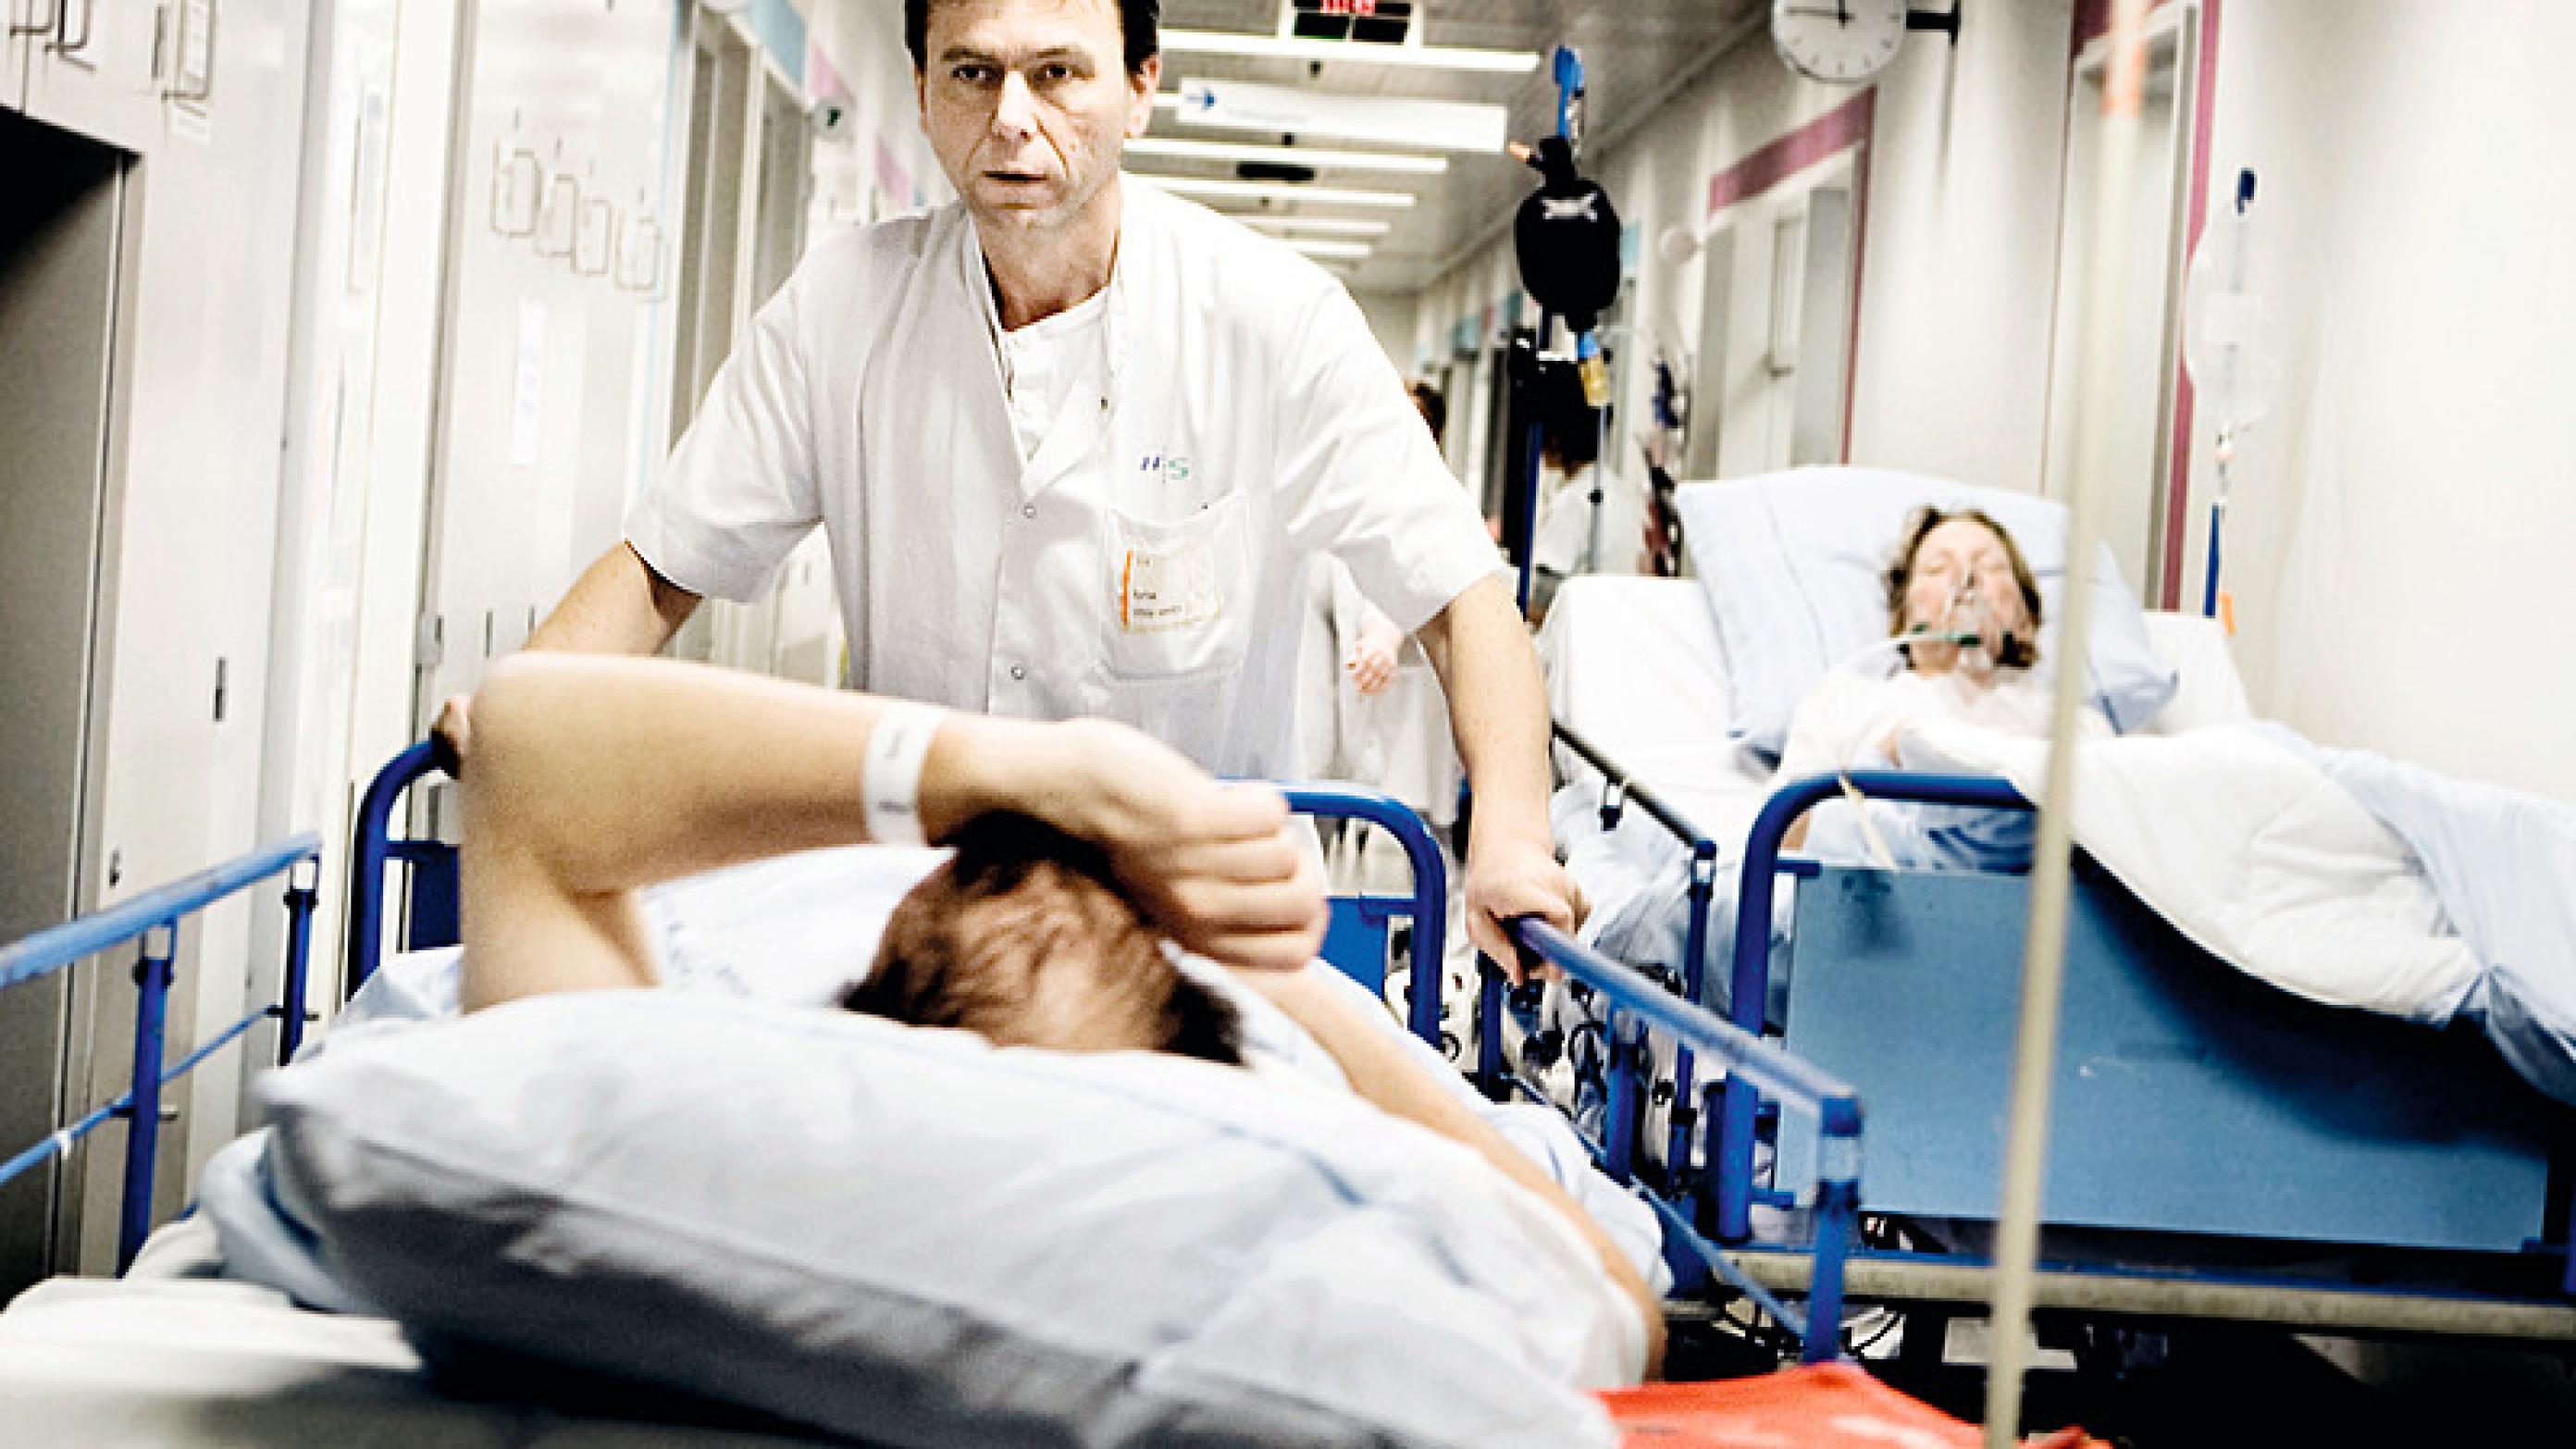 Statsminister Lars Løkke Rasmussen (V) lækker sin sundhedsreform drypvist. Indtil videre har han bebuddet færre indlæggelser og sygehusbesøg for at styrke det nære sundhedsvæsen. Foto: Linda Kastrup.  